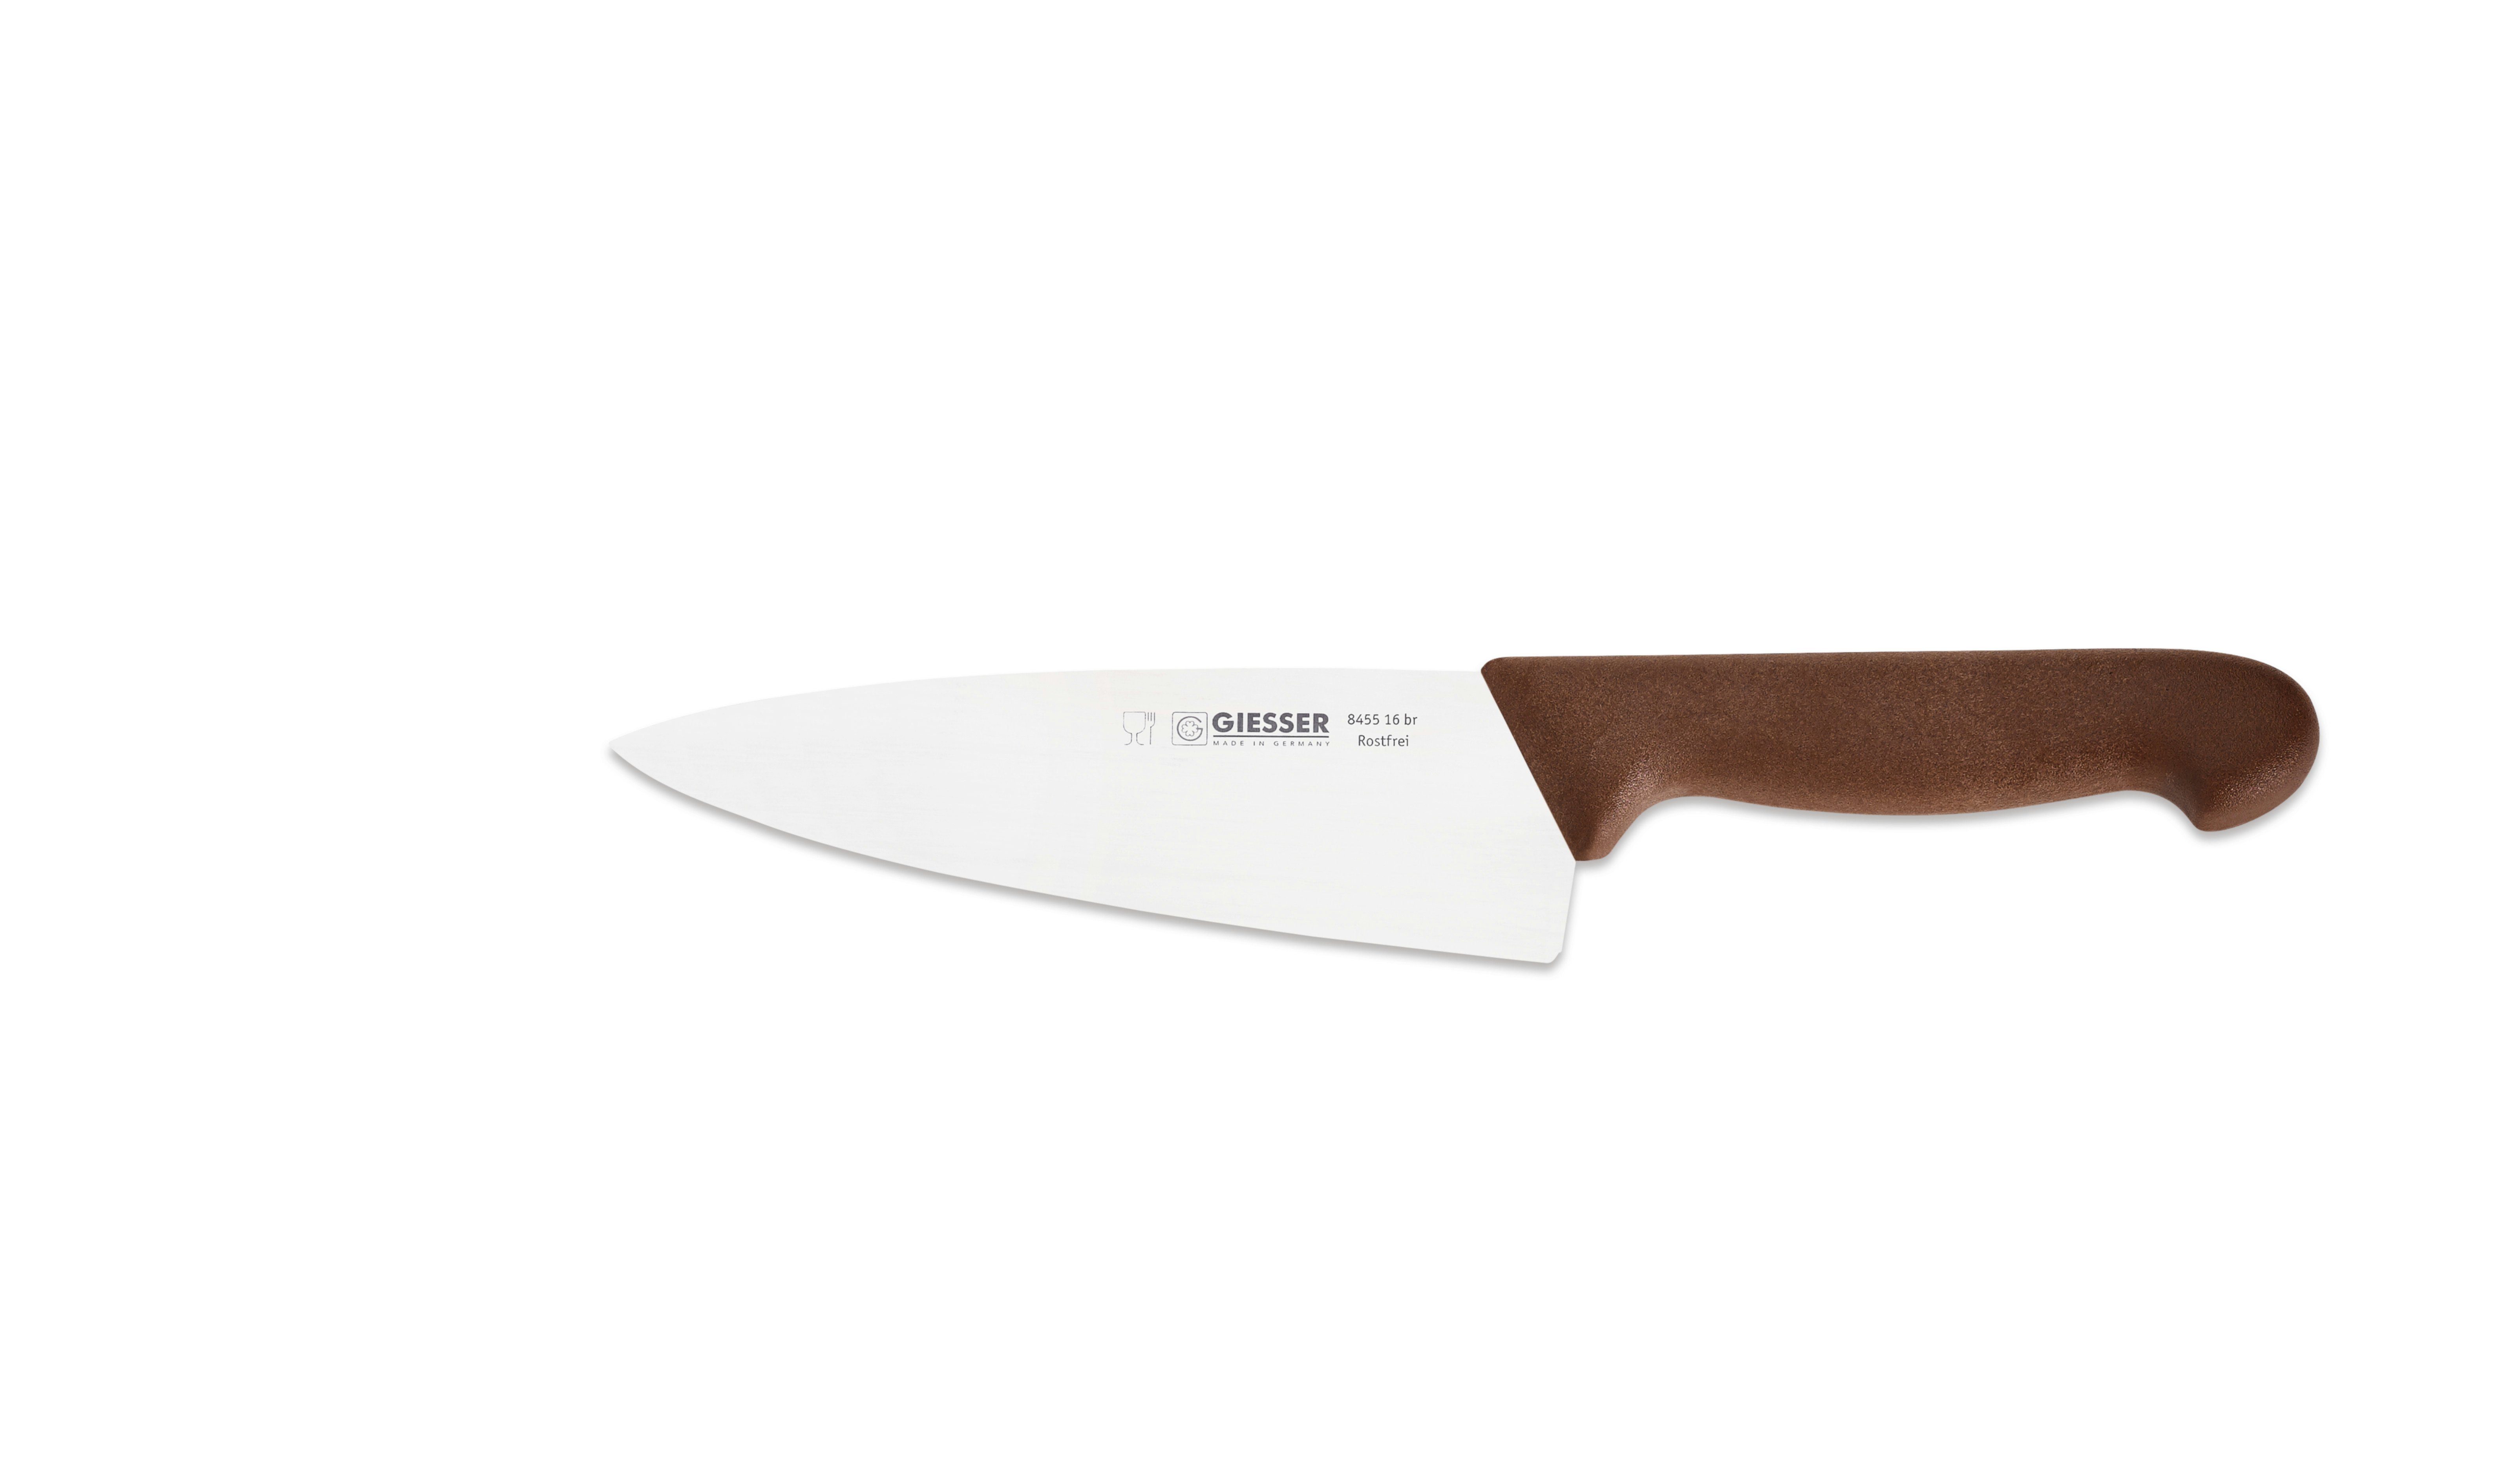 Giesser Messer Kochmesser Form, Rostfrei, jede Küchenmesser Küche breite Handabzug, 8455, Ideal breit braun für scharf